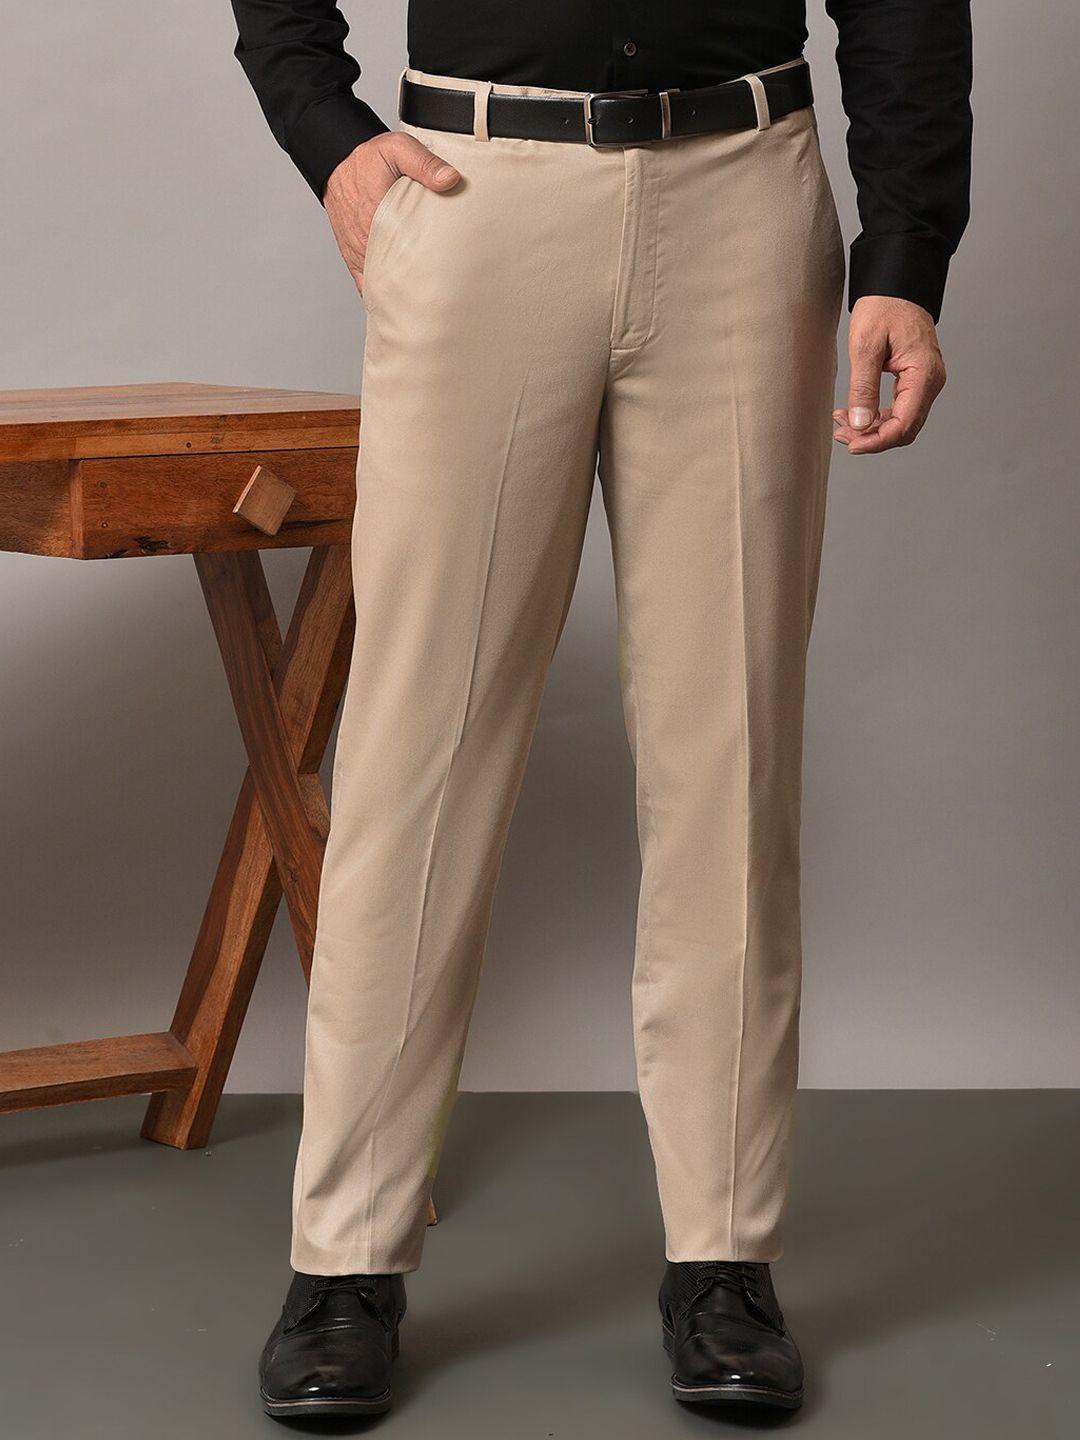 hangup-men-original-mid-rise-formal-trousers